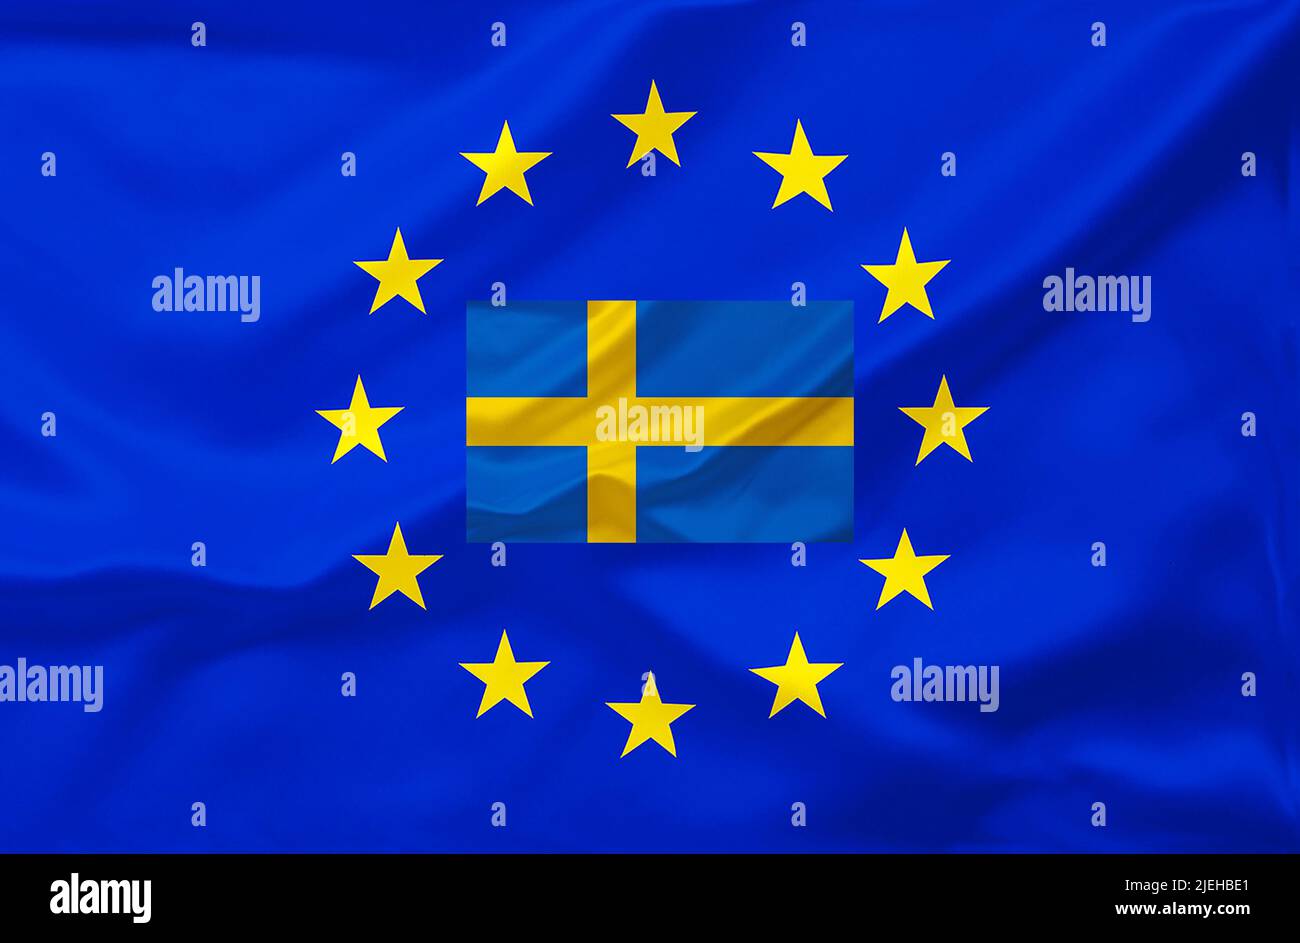 Fotomontage, Flagge von Europa, EU, Europäische Union, Schweden, Mitgliedschaft, Mitglied, Stock Photo